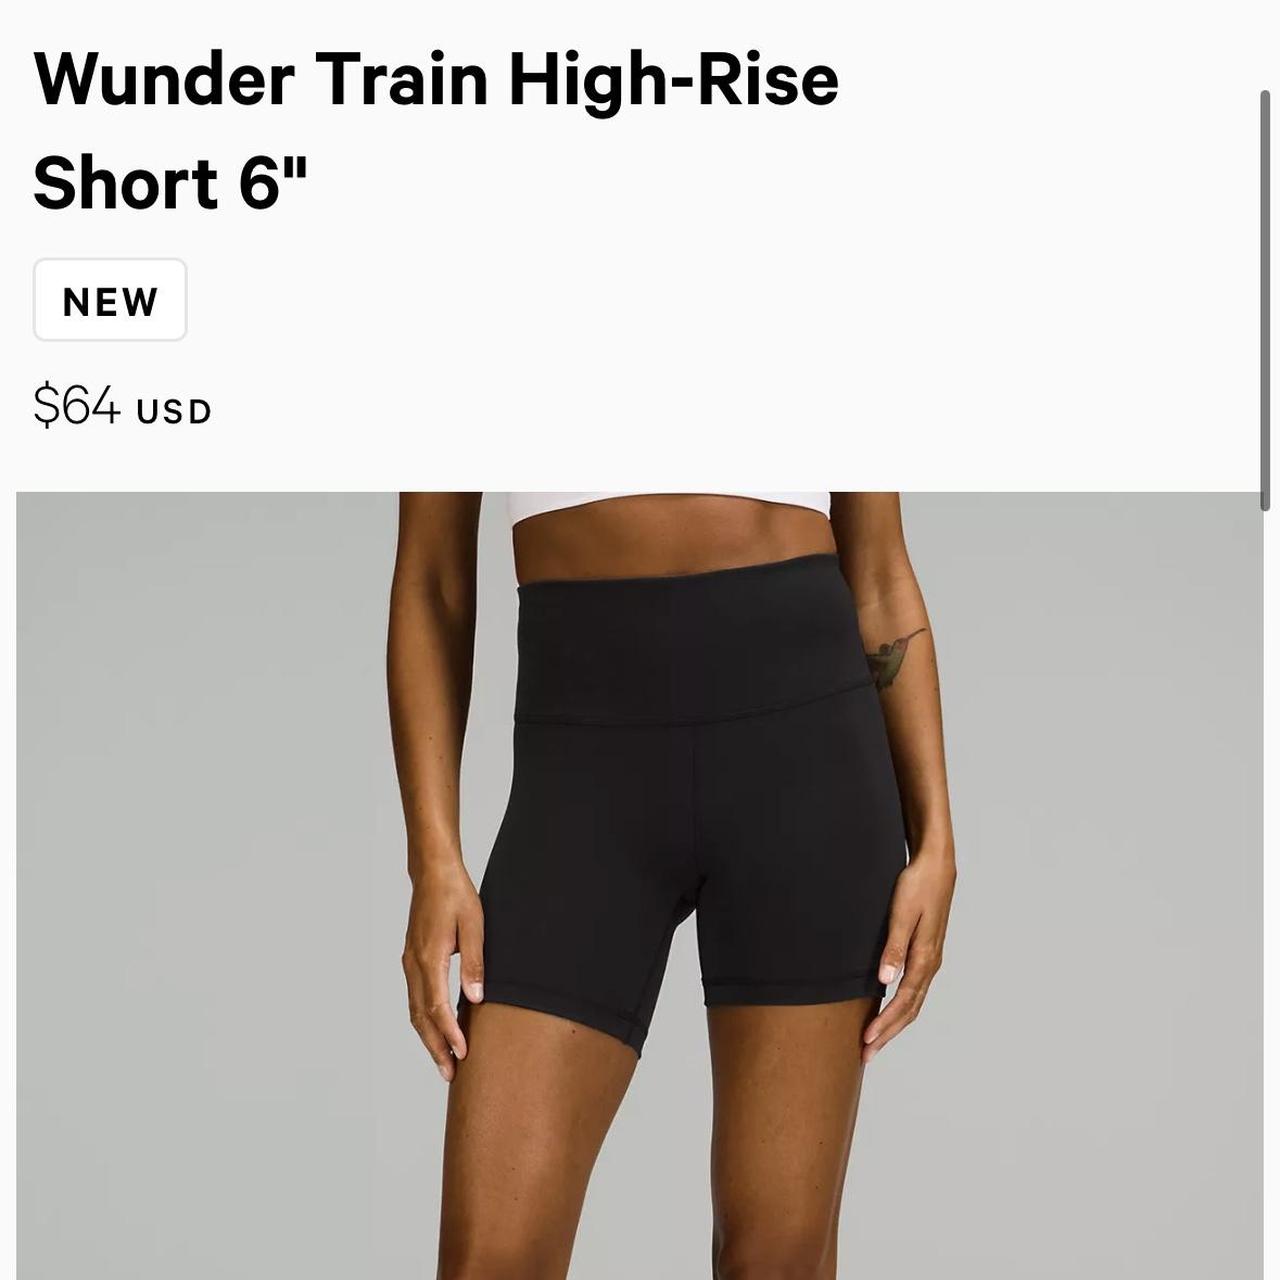 Wunder Train High-Rise Short 6, Shorts